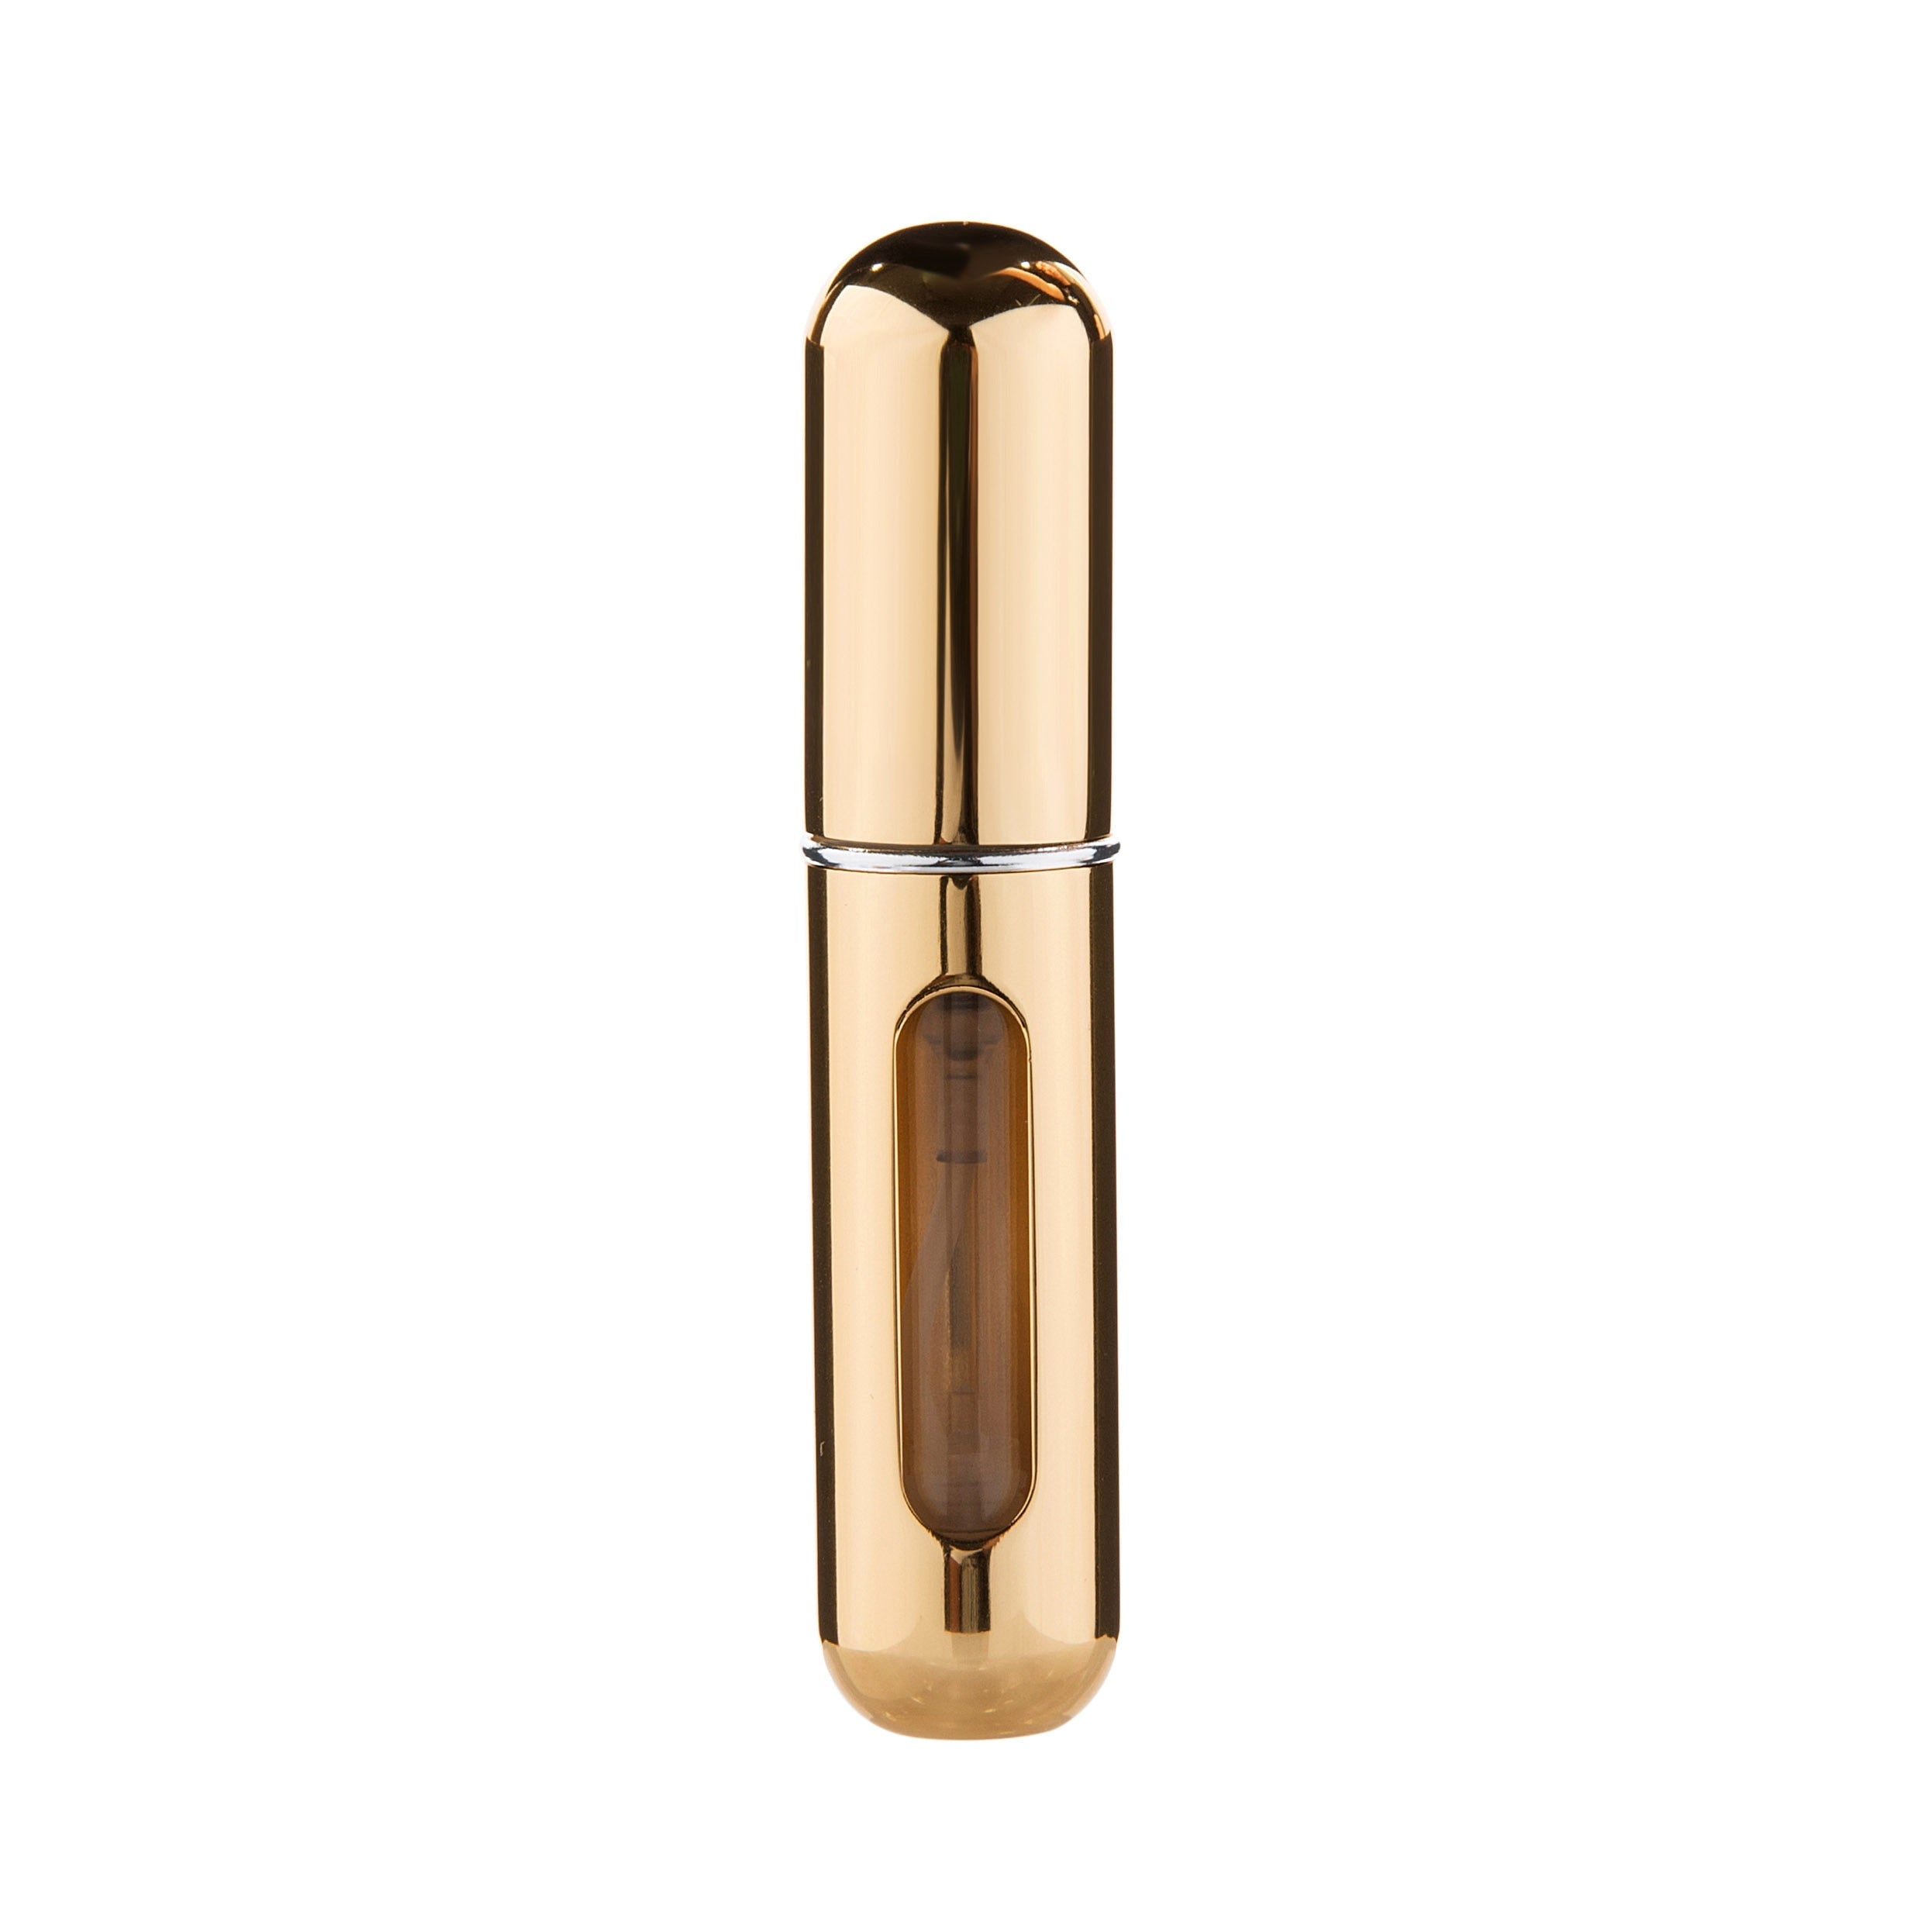 Shiny Gold - 5ml Portable Mini Refillable Perfume Bottle - Travel Spray Atomizer Bottle